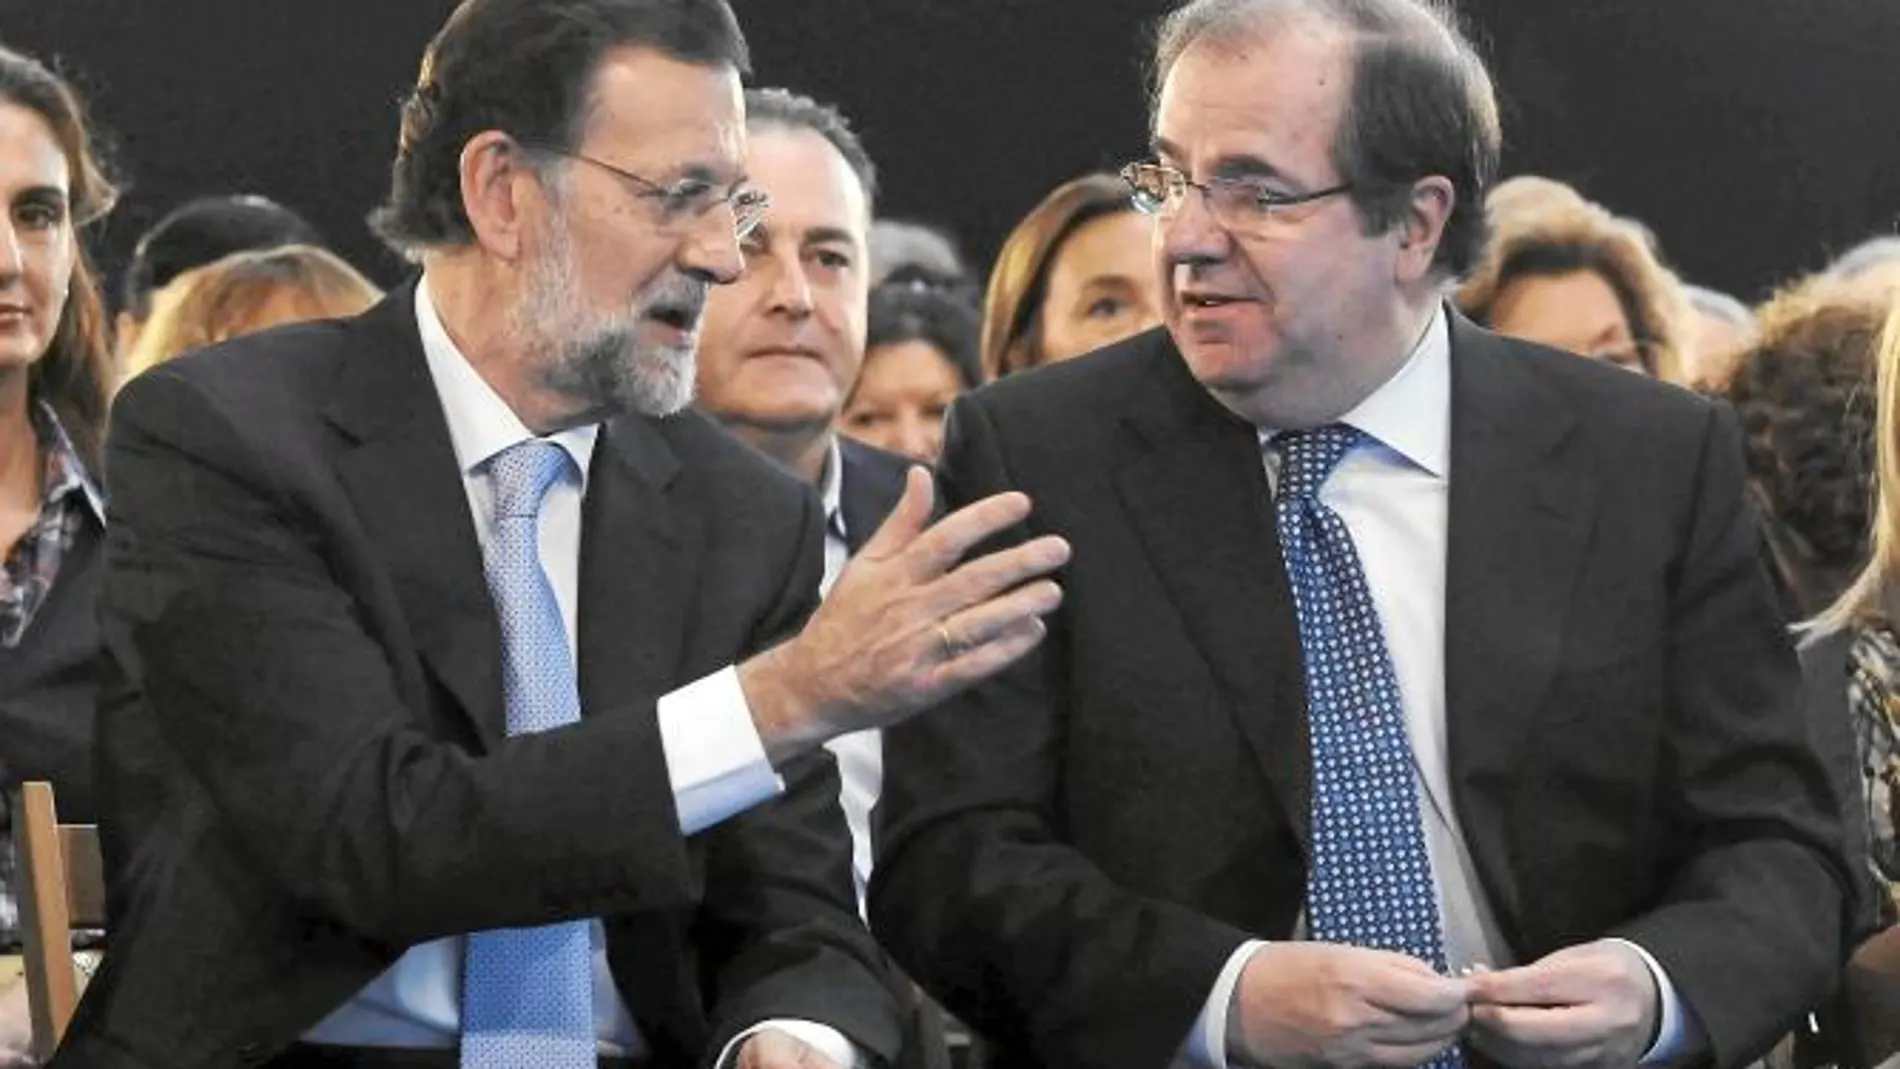 Mariano Rajoy y Juan Vicente Herrera conversan antes de arrancar el mitin.